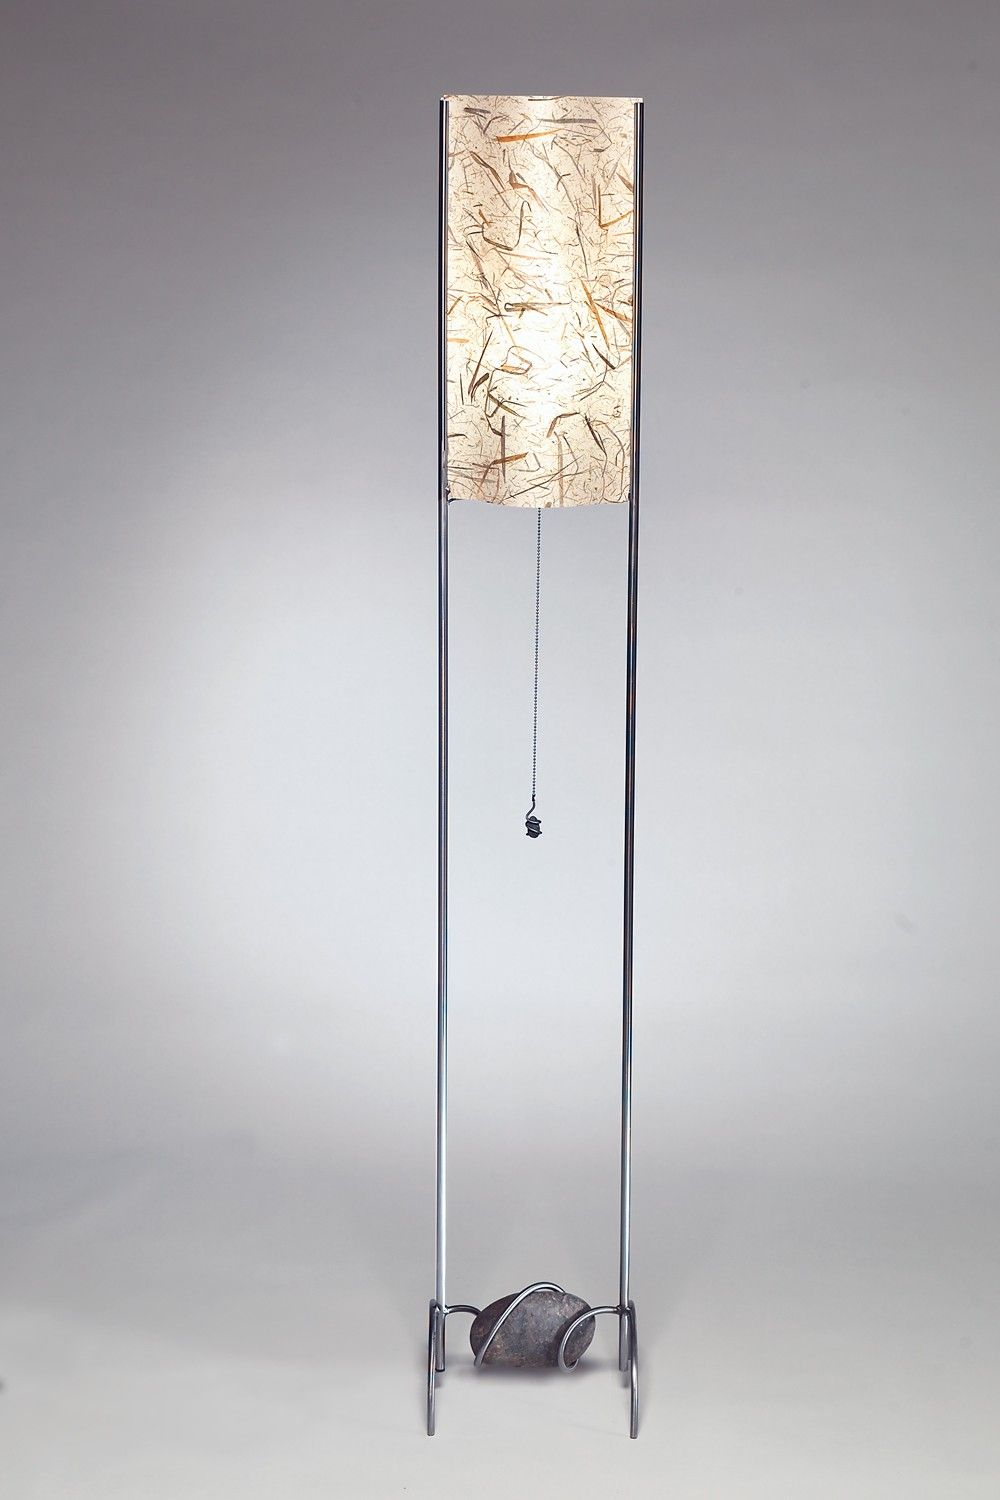 Extra Tall Floor Lamps Tall Floor Lamps Tall Lamps Floor with regard to measurements 1000 X 1500